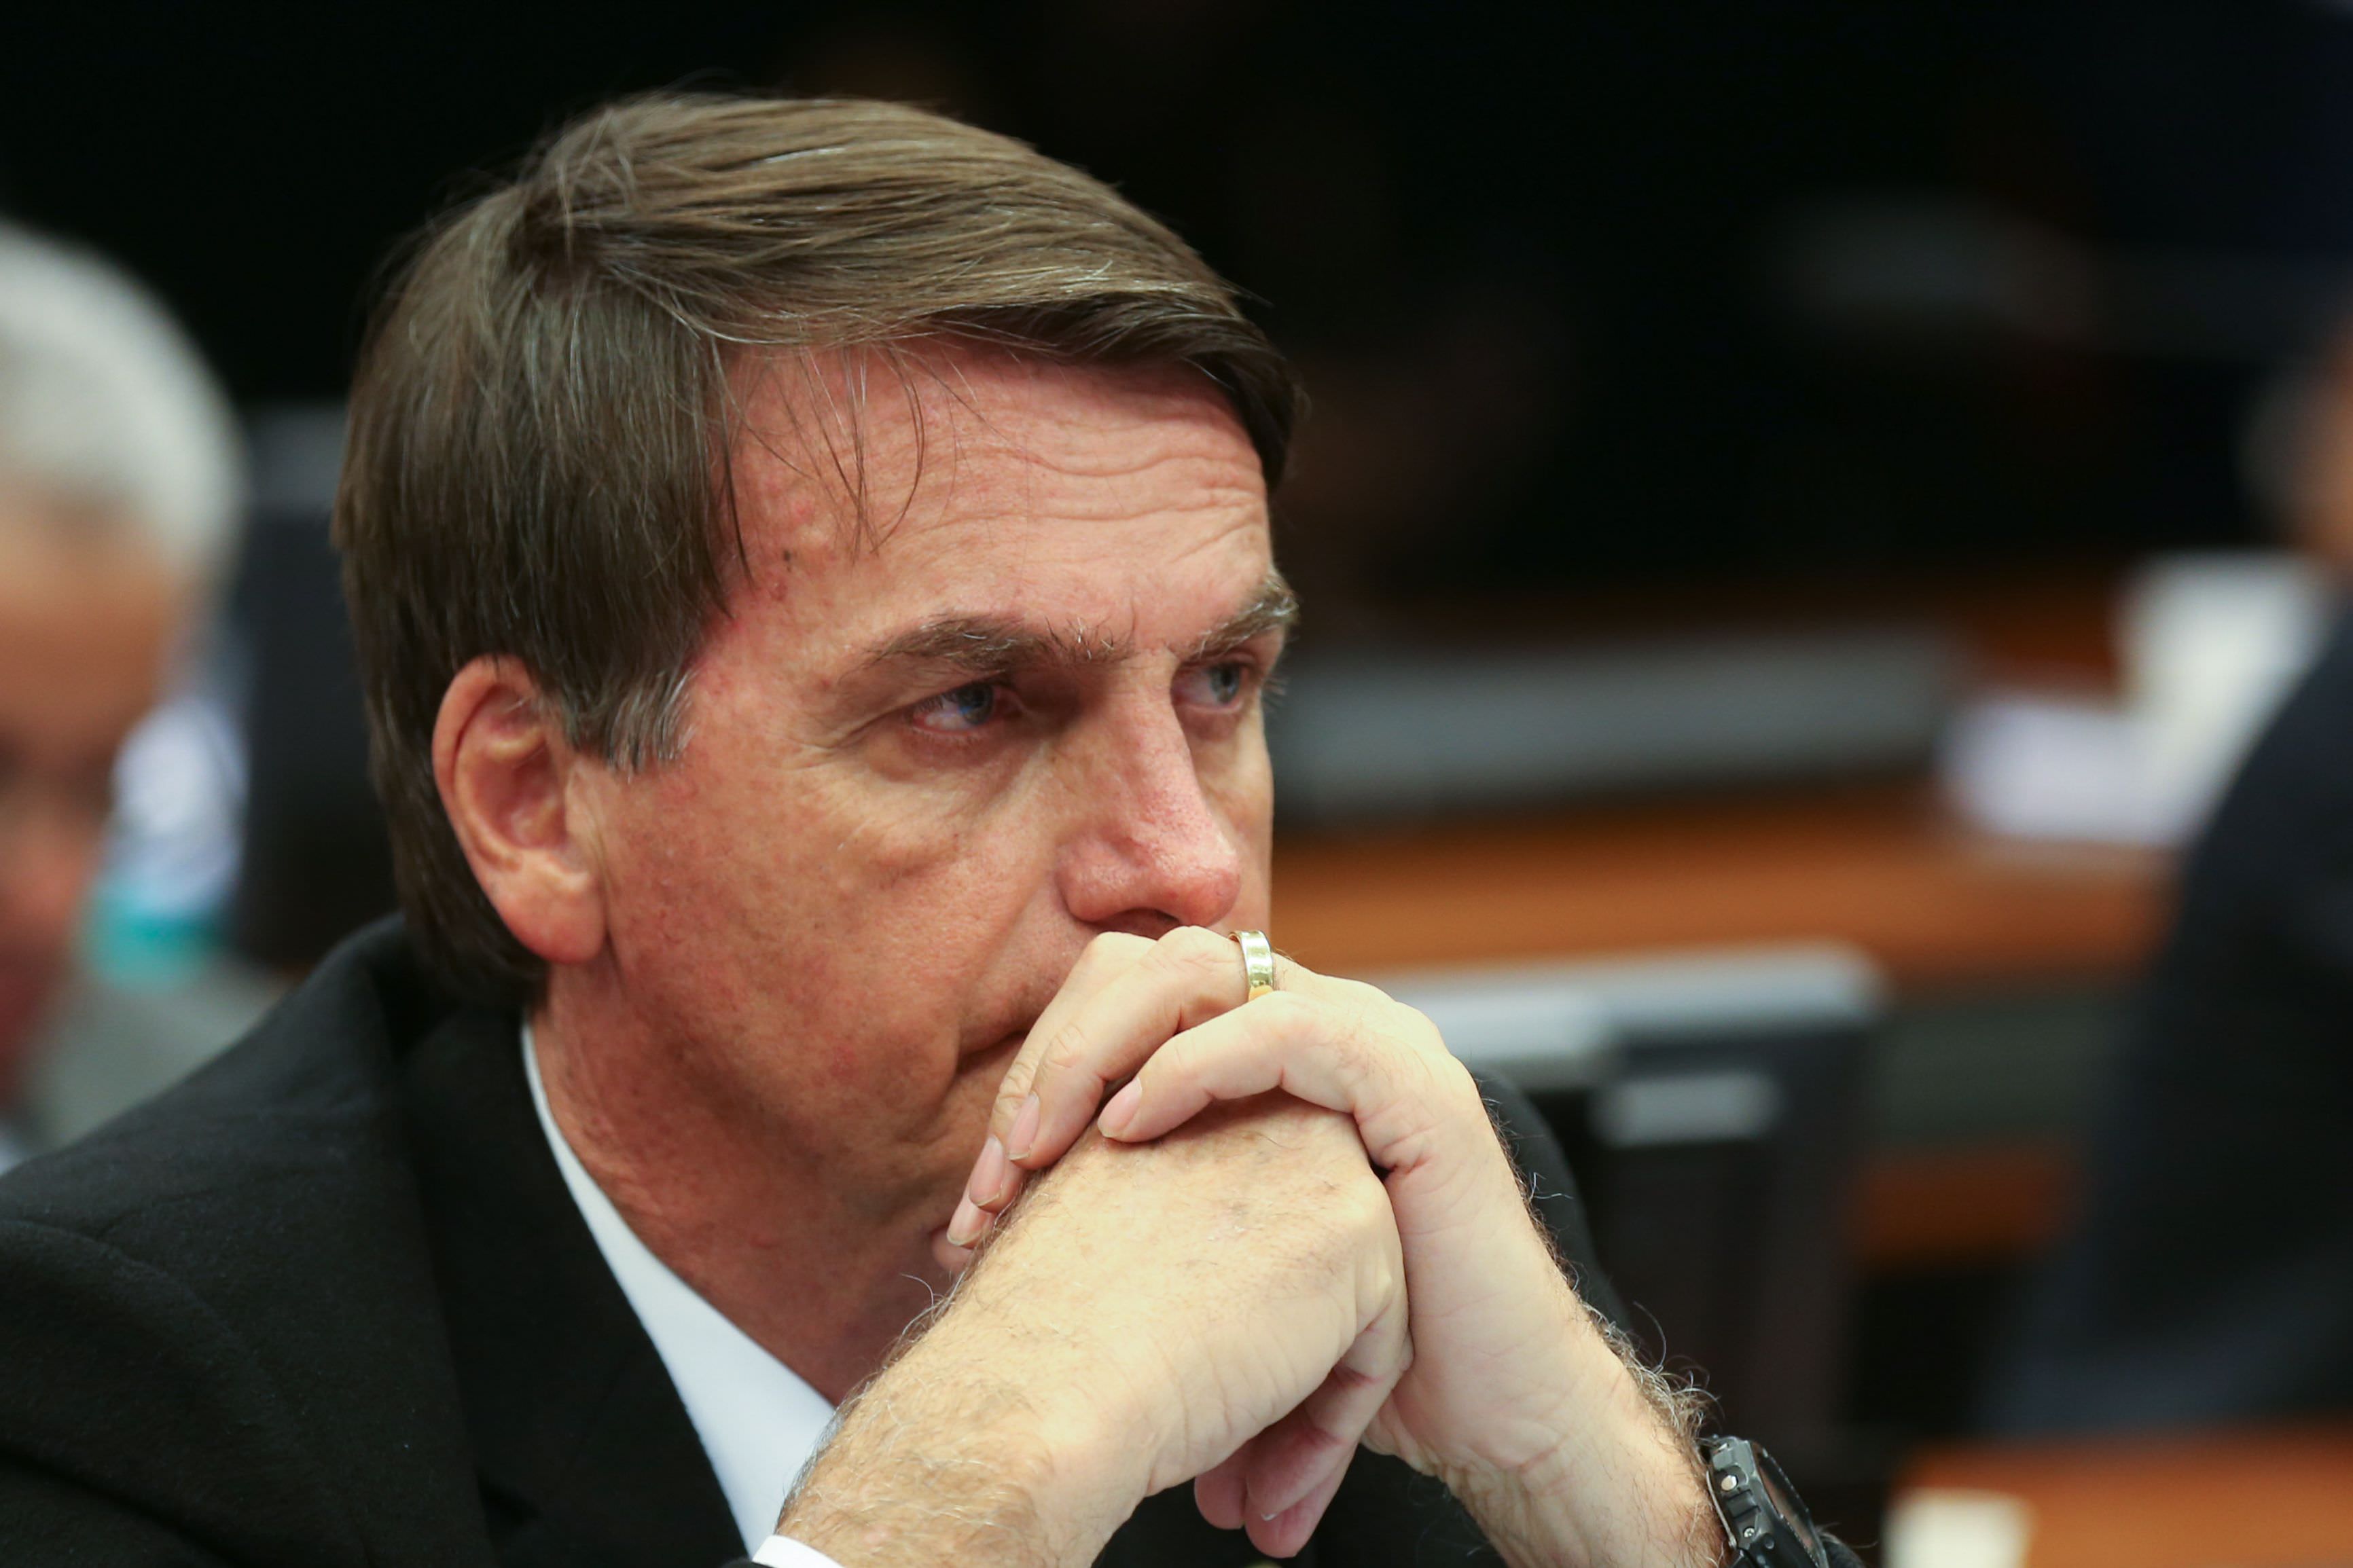 Usuários do Twitter pedem impeachments de Bolsonaro e Gilmar Mendes